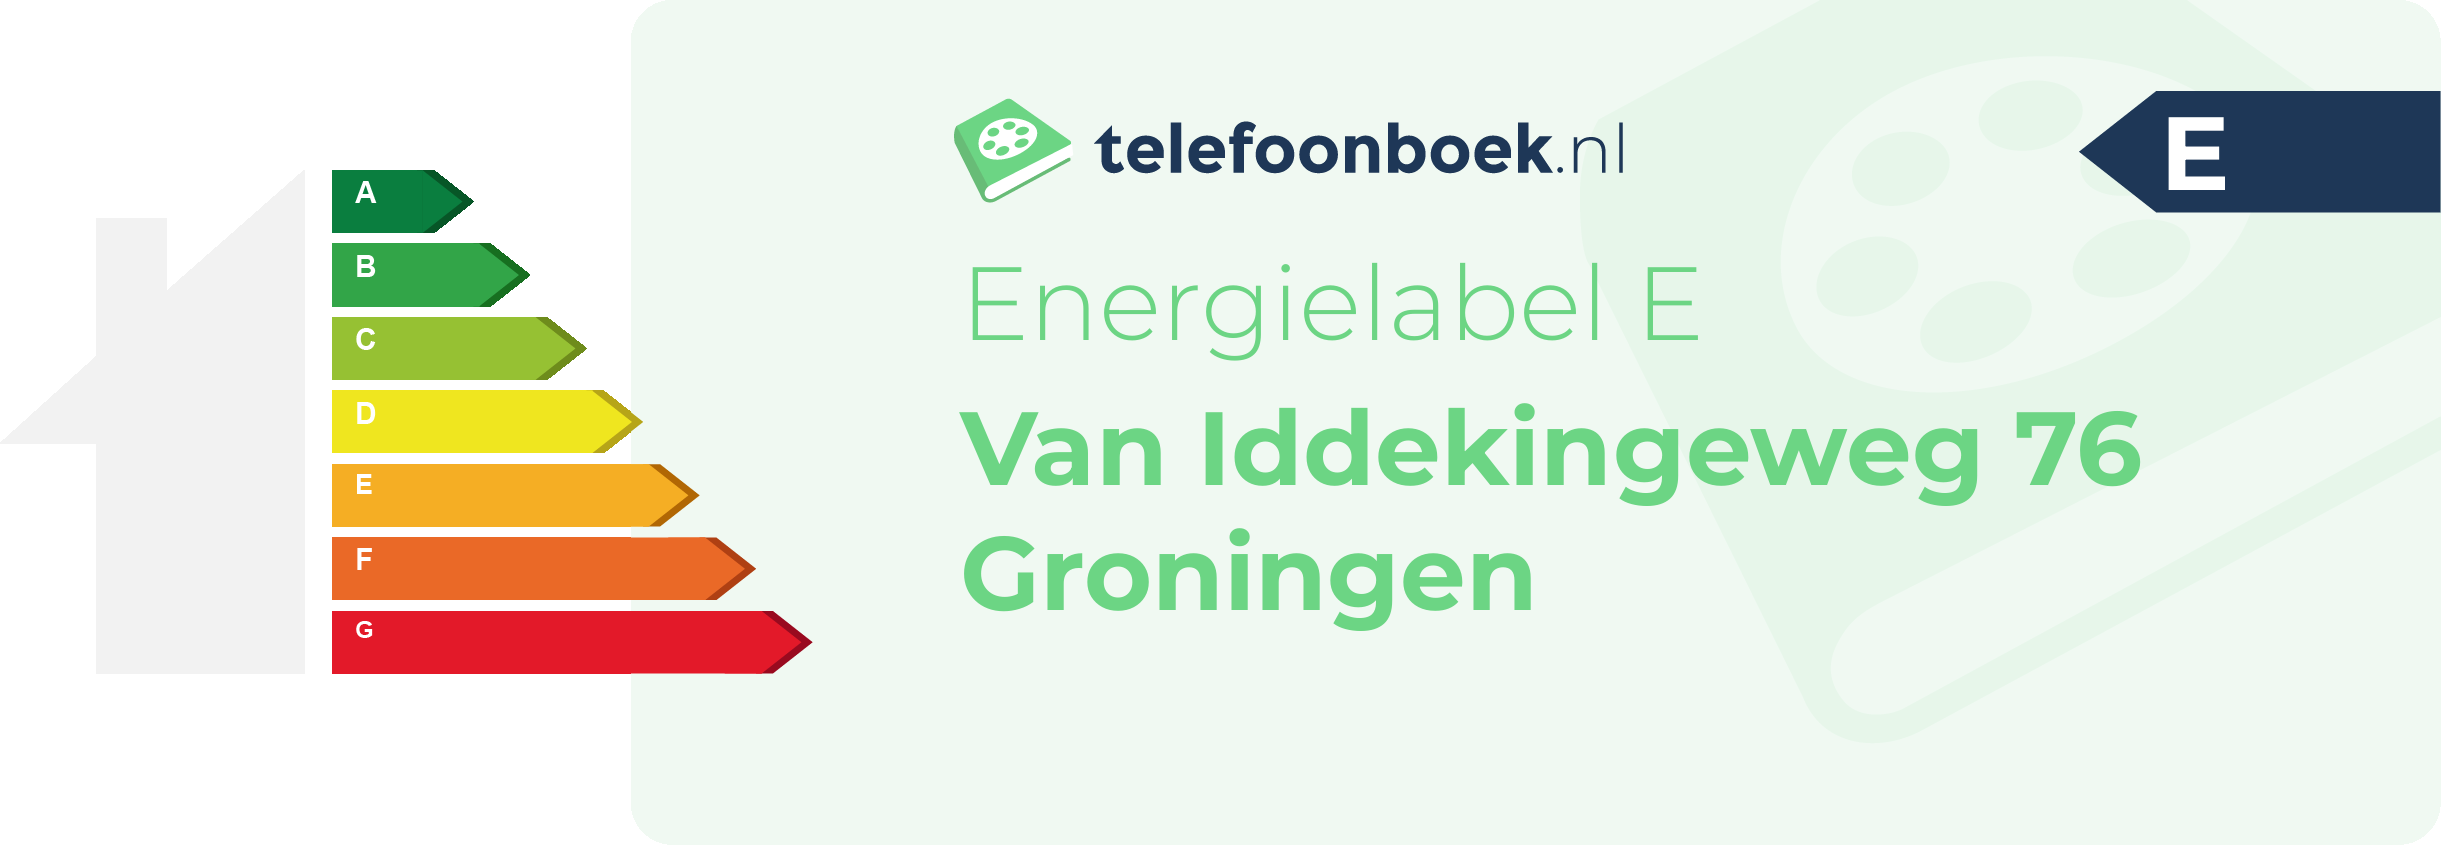 Energielabel Van Iddekingeweg 76 Groningen